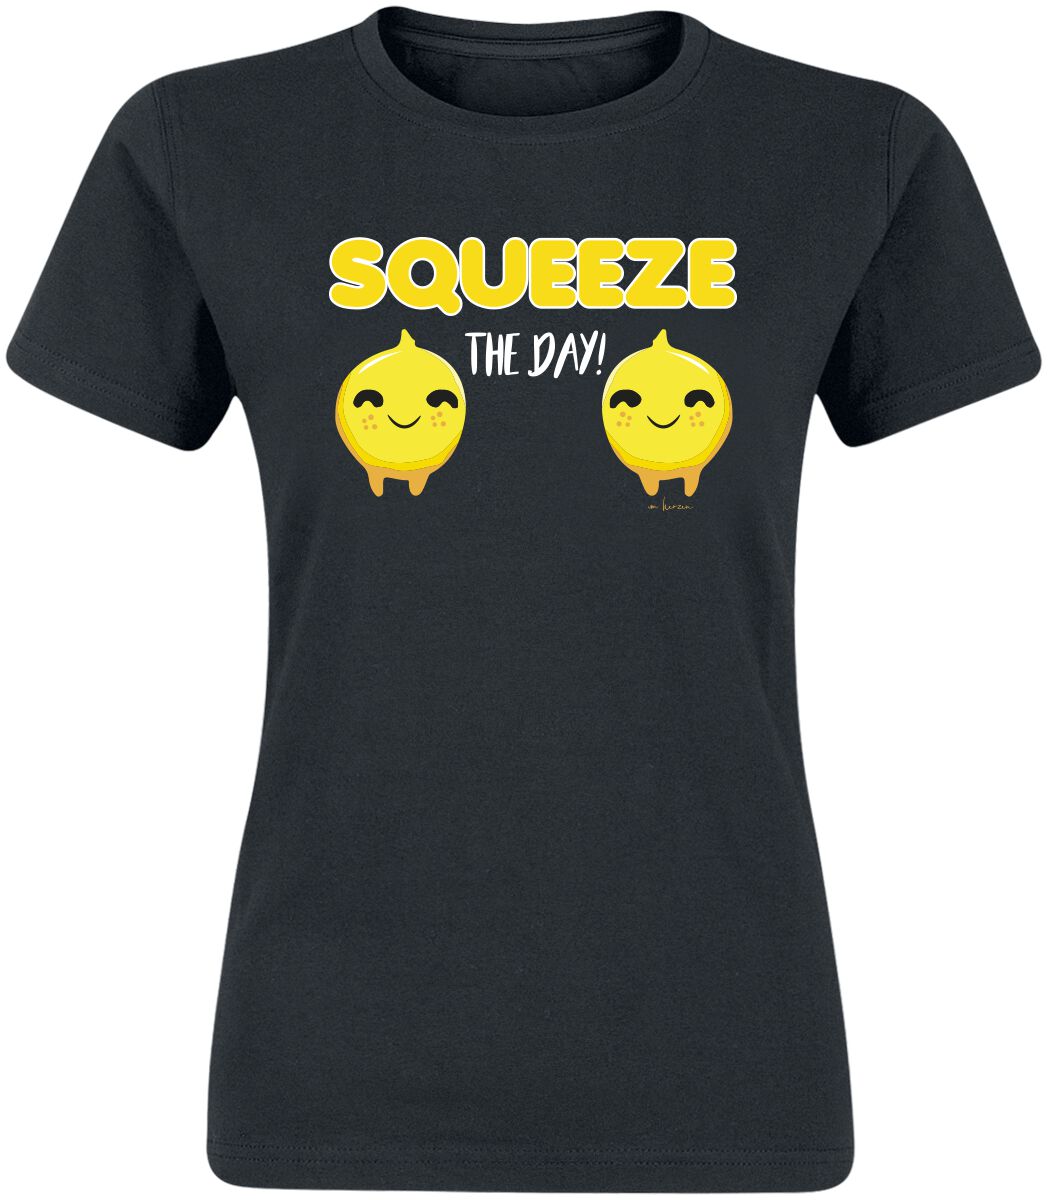 Sprüche T-Shirt - Squeeze The Day! - S bis XXL - für Damen - Größe L - schwarz